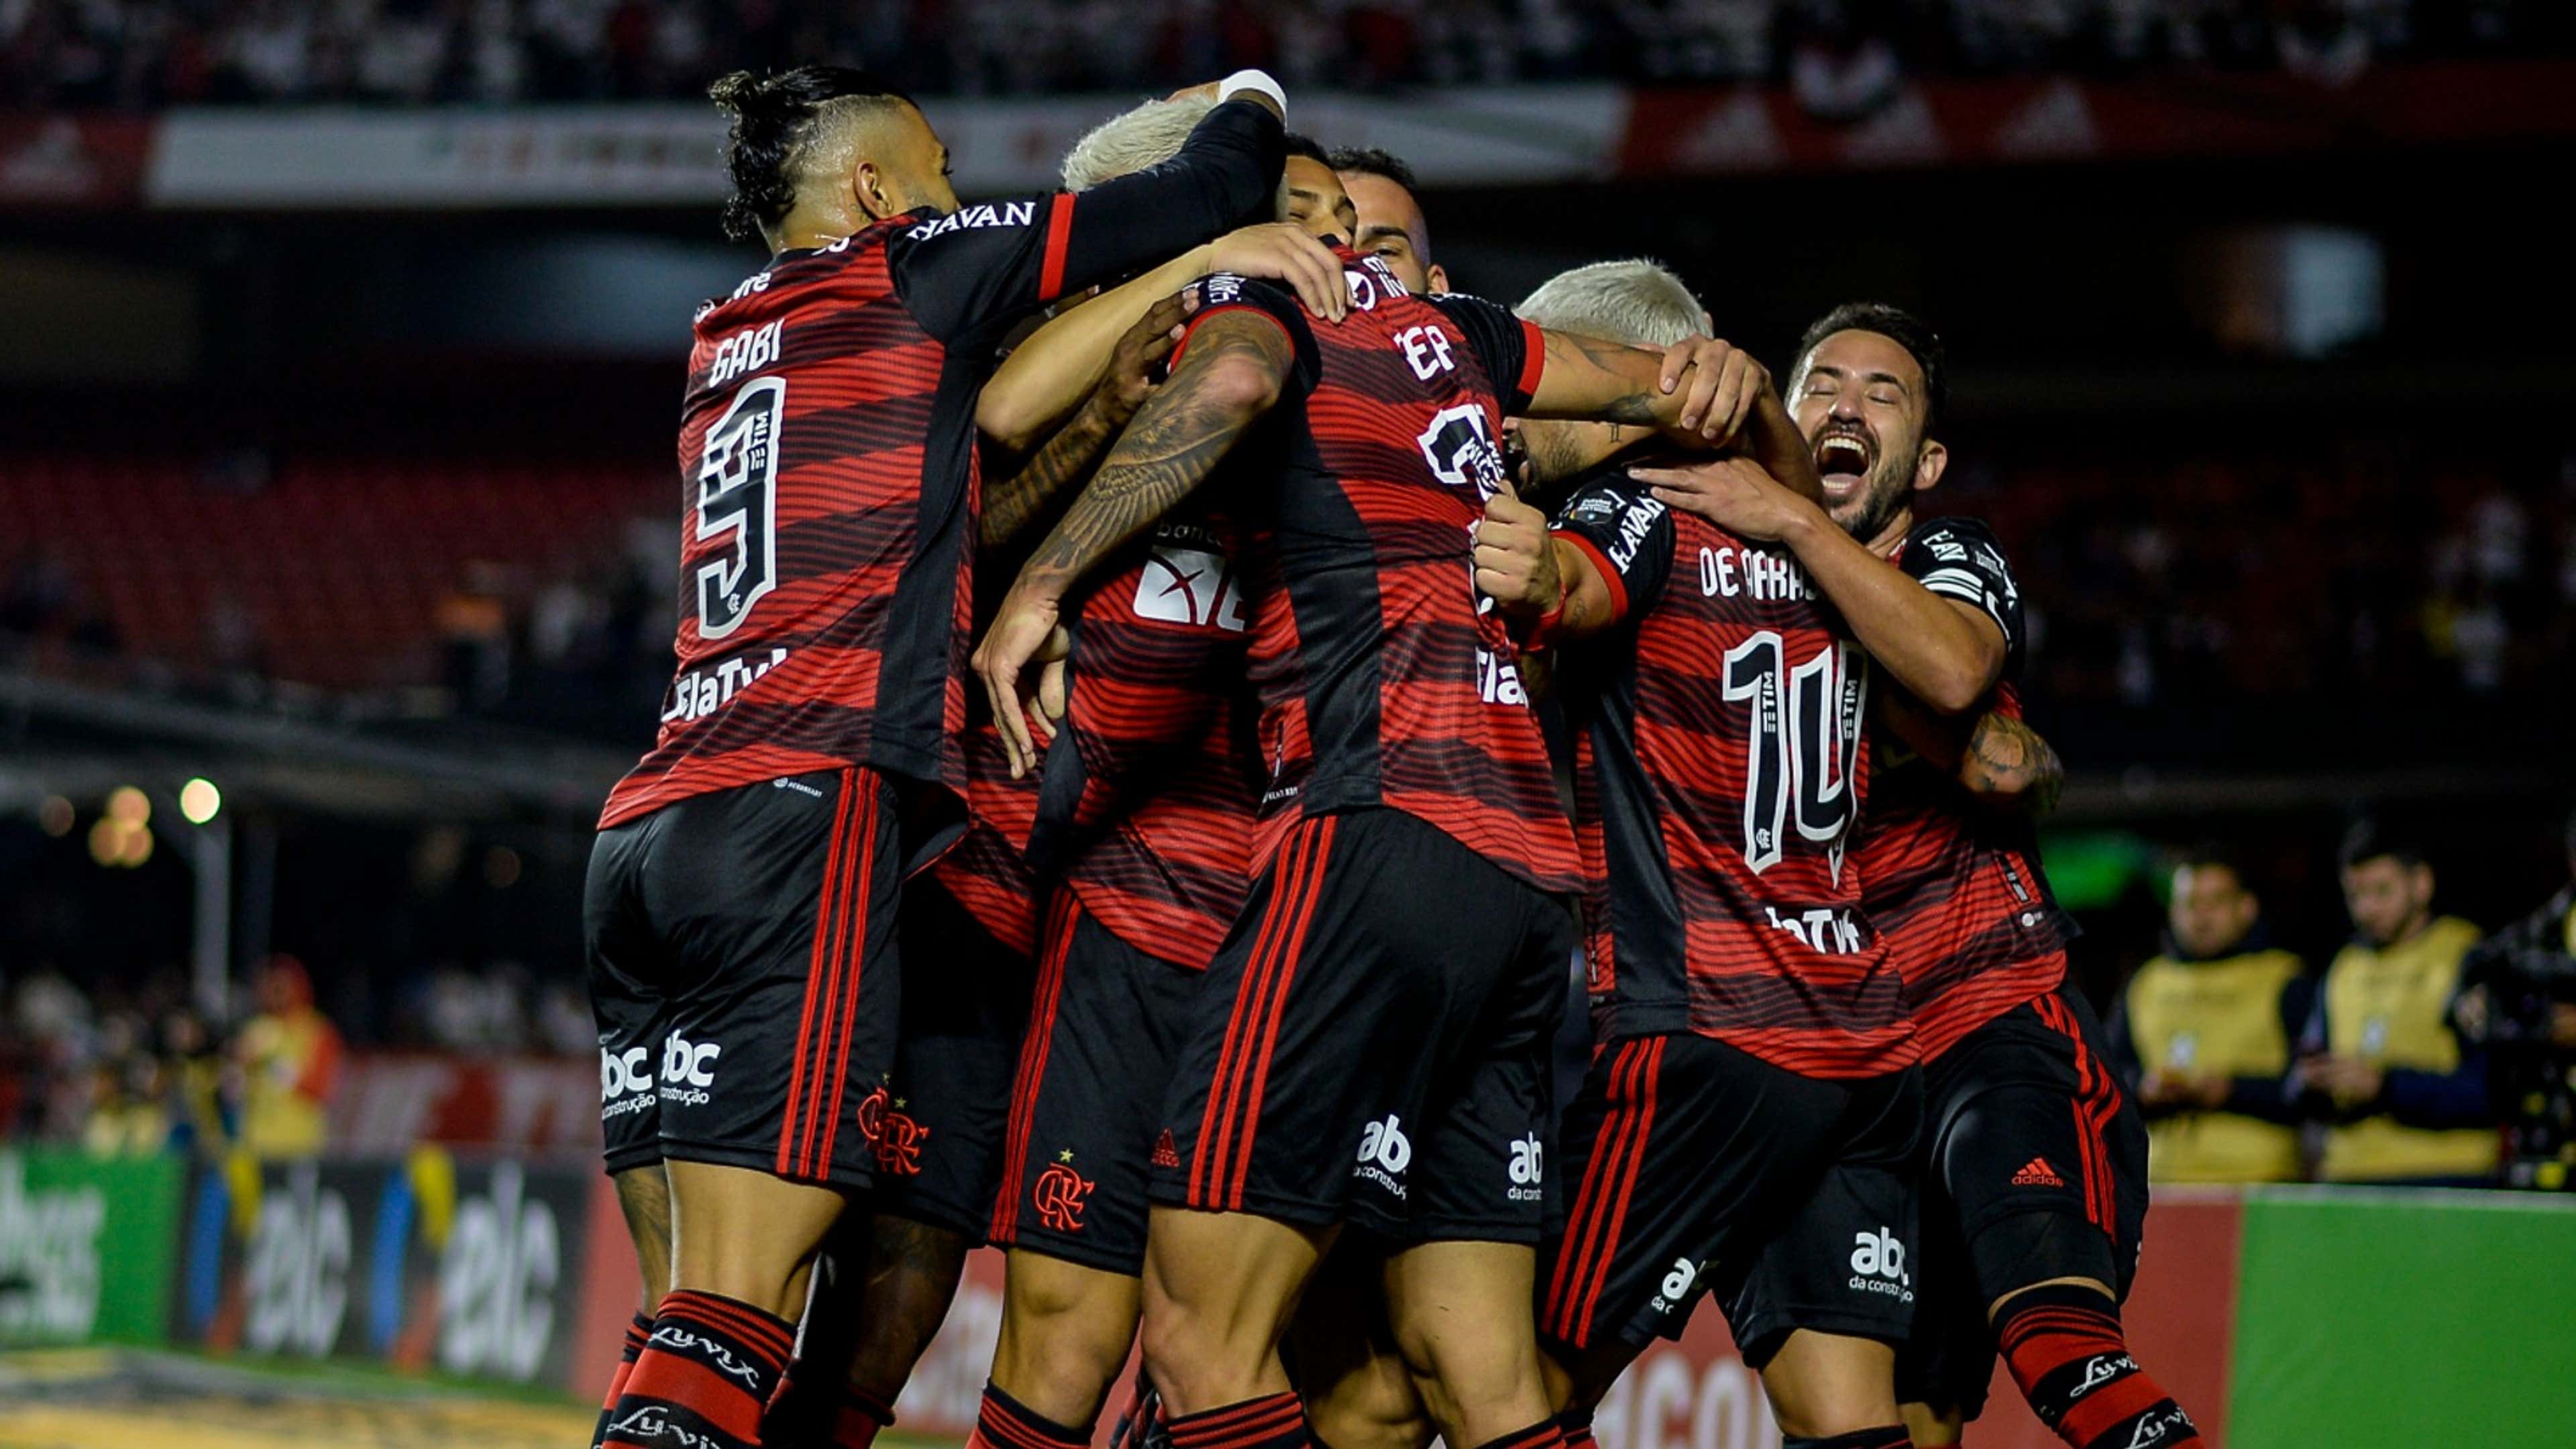 Flamengo x São Paulo ao vivo: onde assistir à final da Copa do